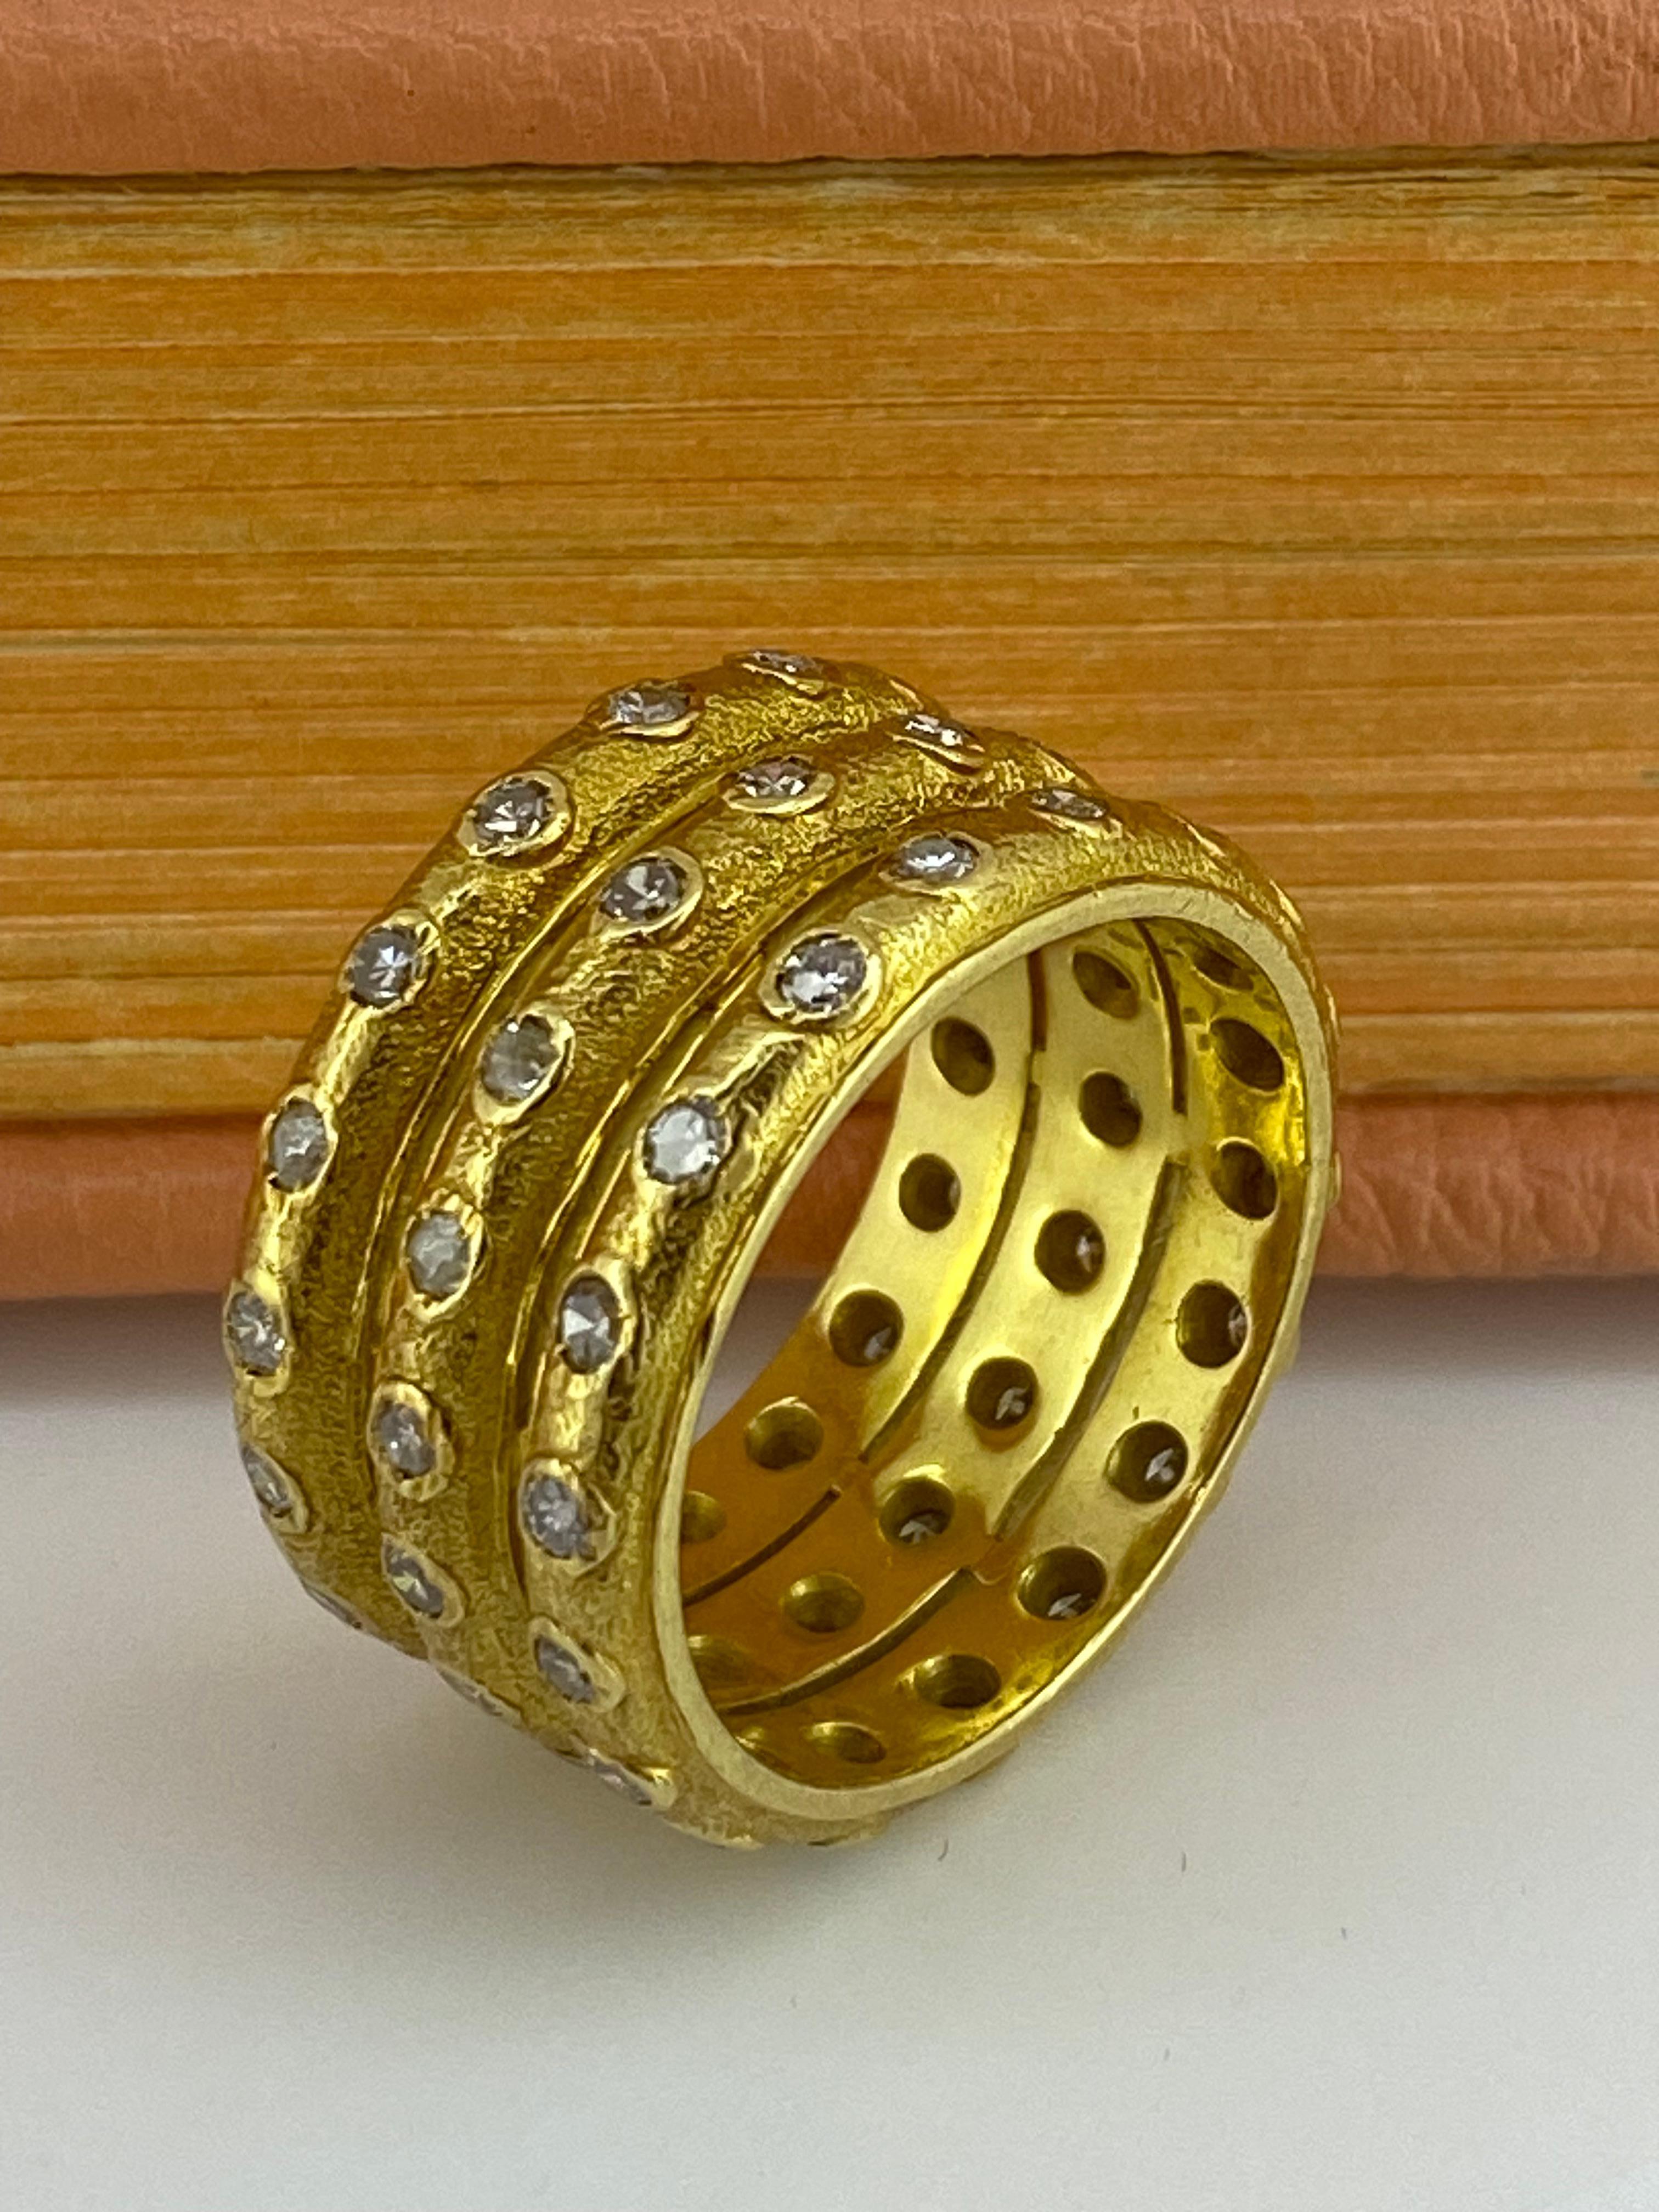 Hervorragend gestaltet als 3 feste Bänder, 
(jeweils ca. 3,5 mm groß),
verziert mit Diamanten von sehr guter Farbe und Reinheit: G/SI
Dieser Ring ist handgefertigt und von französischer Herkunft, 
fein gearbeitet in 18K Gelbgold 

Gesamtzahl der